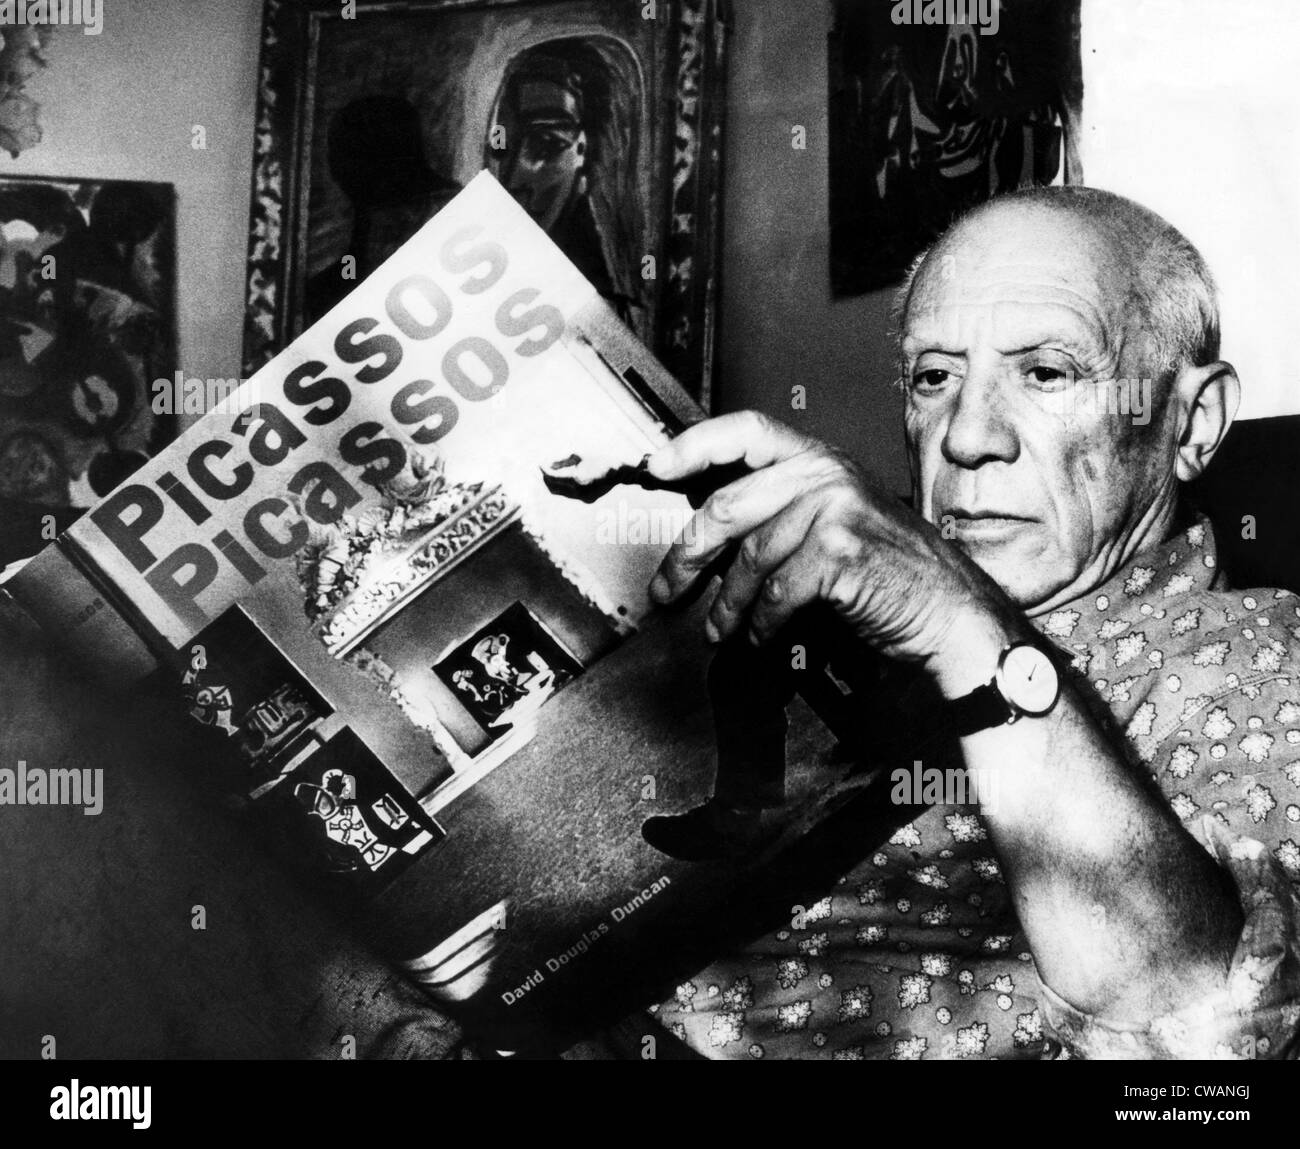 Pablo Picasso artiste fom lit son livre à son domicile sur la côte d'Azur.  10/19/60. Avec la permission de : Archives CSU/Everett Collection Photo  Stock - Alamy